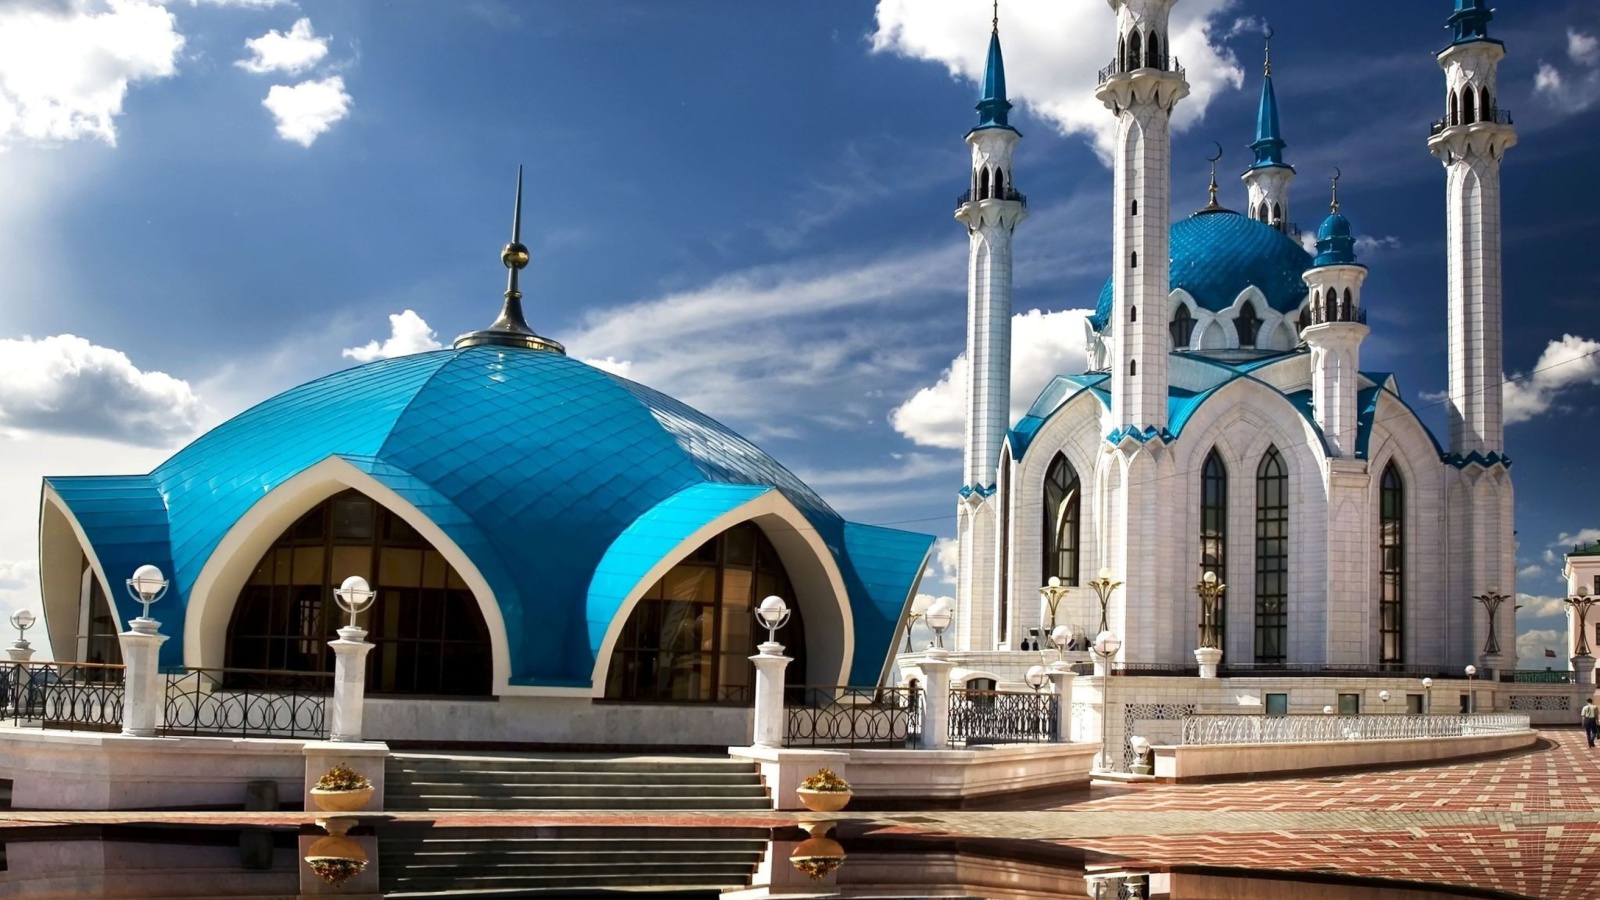 Kul Sharif Mosque in Kazan wallpaper 1600x900